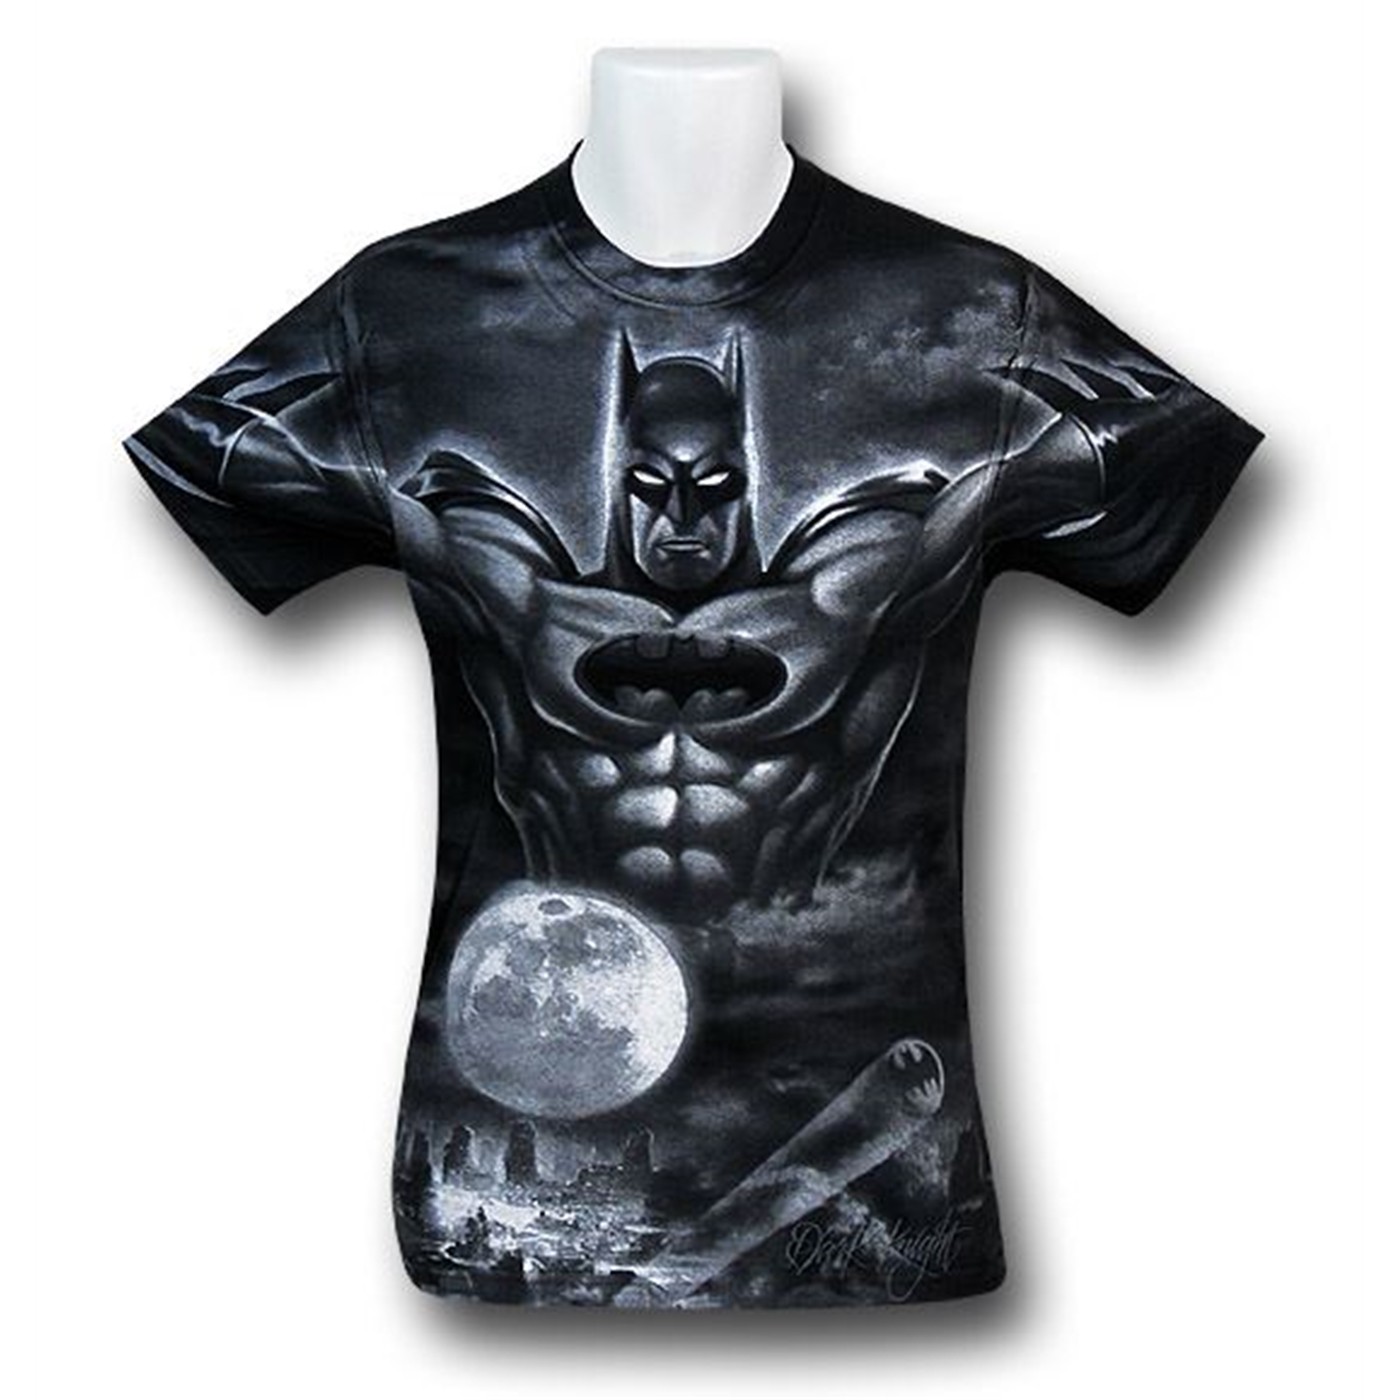 Batman t. Бэтмен т ширт. Batman t Shirt. Темный рыцарь футболка. Футболка Бэтмен.